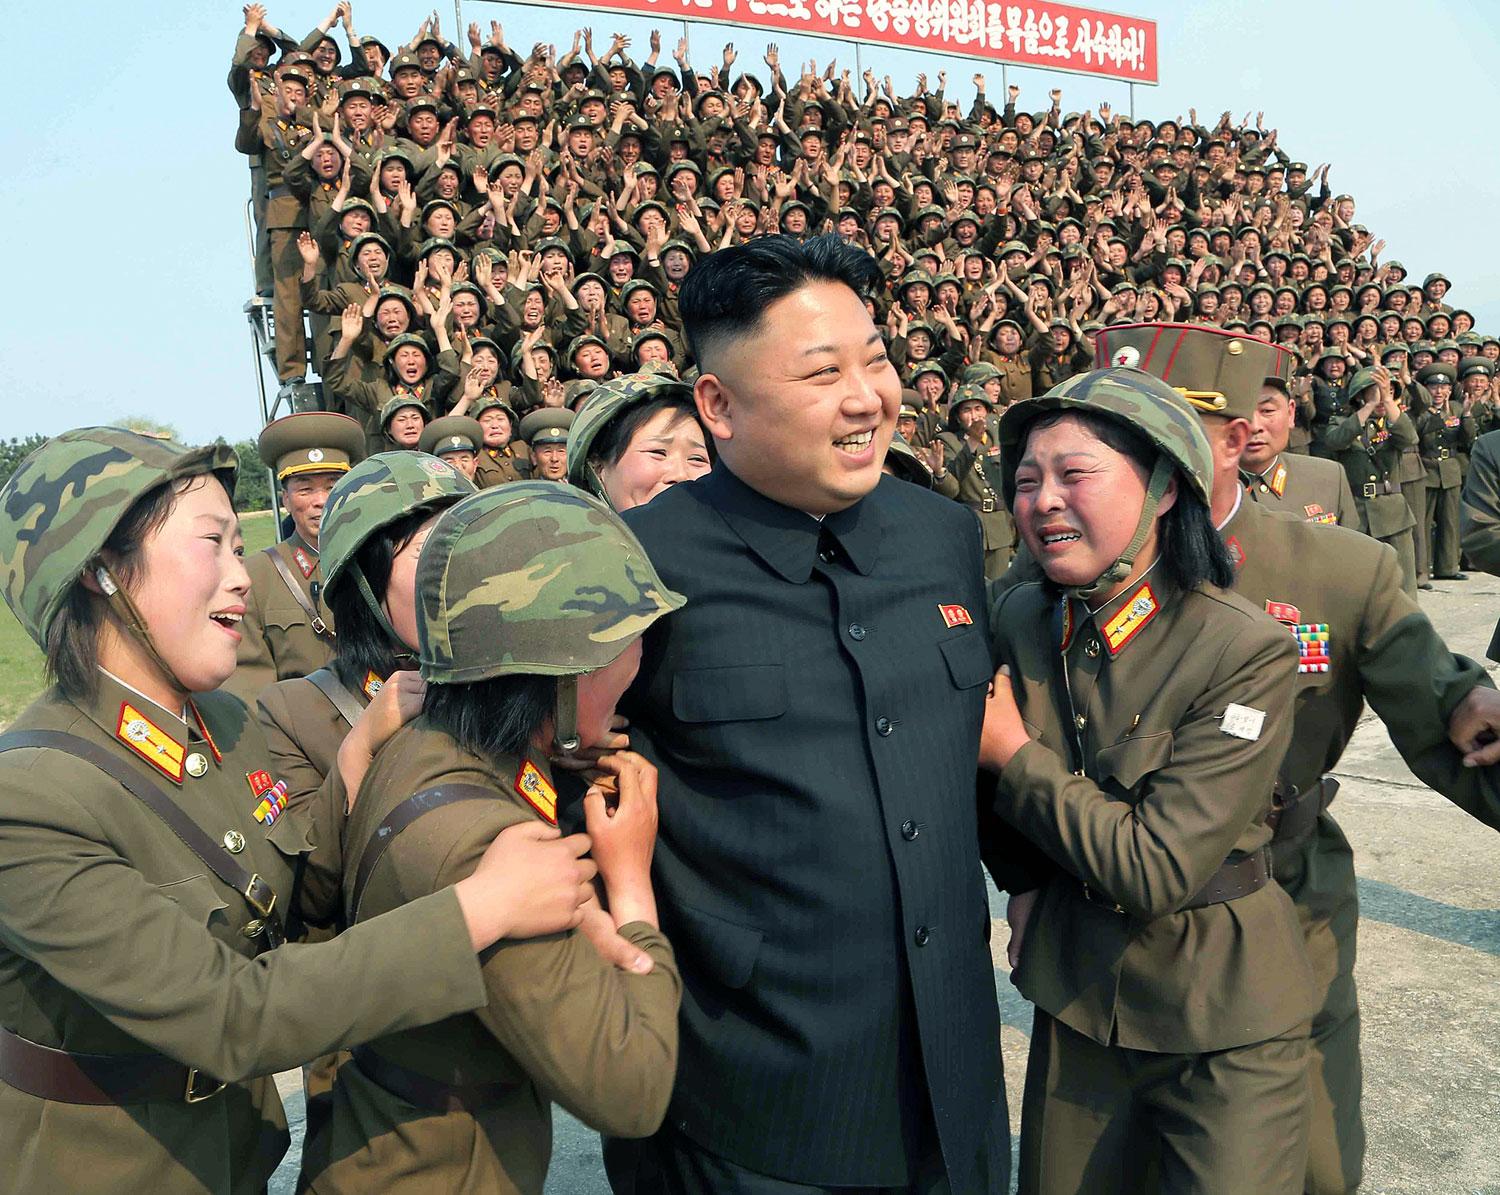 Észak-Koreában csak  a felső kaszt mentesülhet a tízéves sorkatonai szolgálat alól. Az aktuális Kim  eksztázisban lévő katonanők gyűrűjében